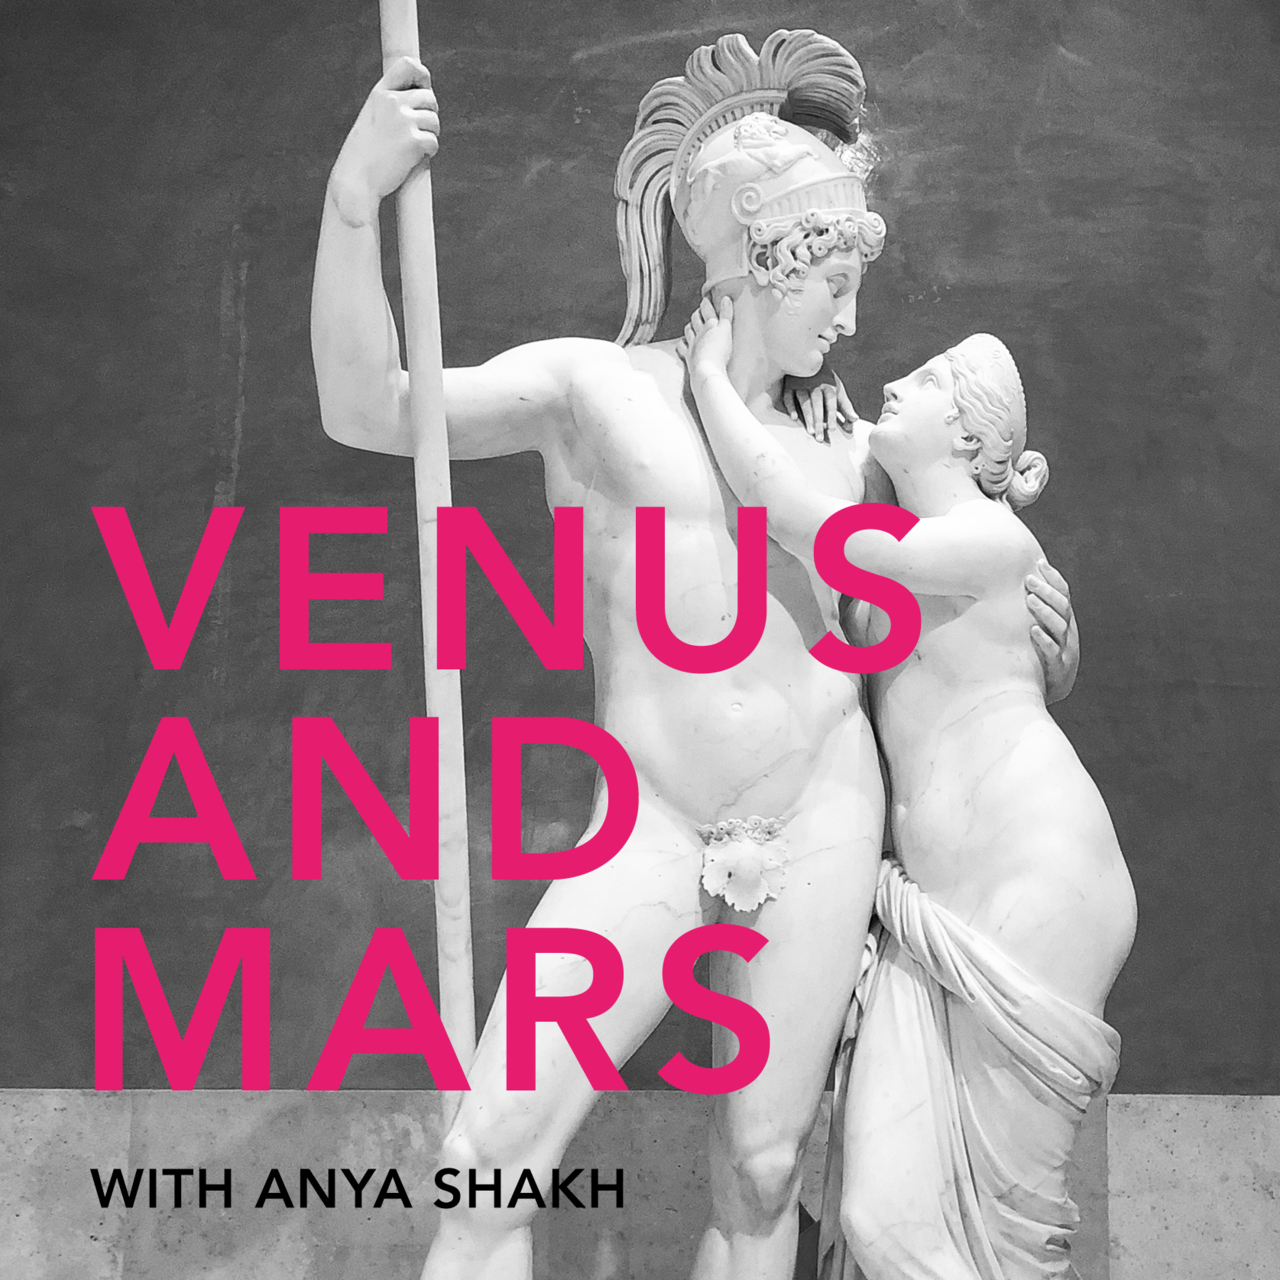 Venus and Mars